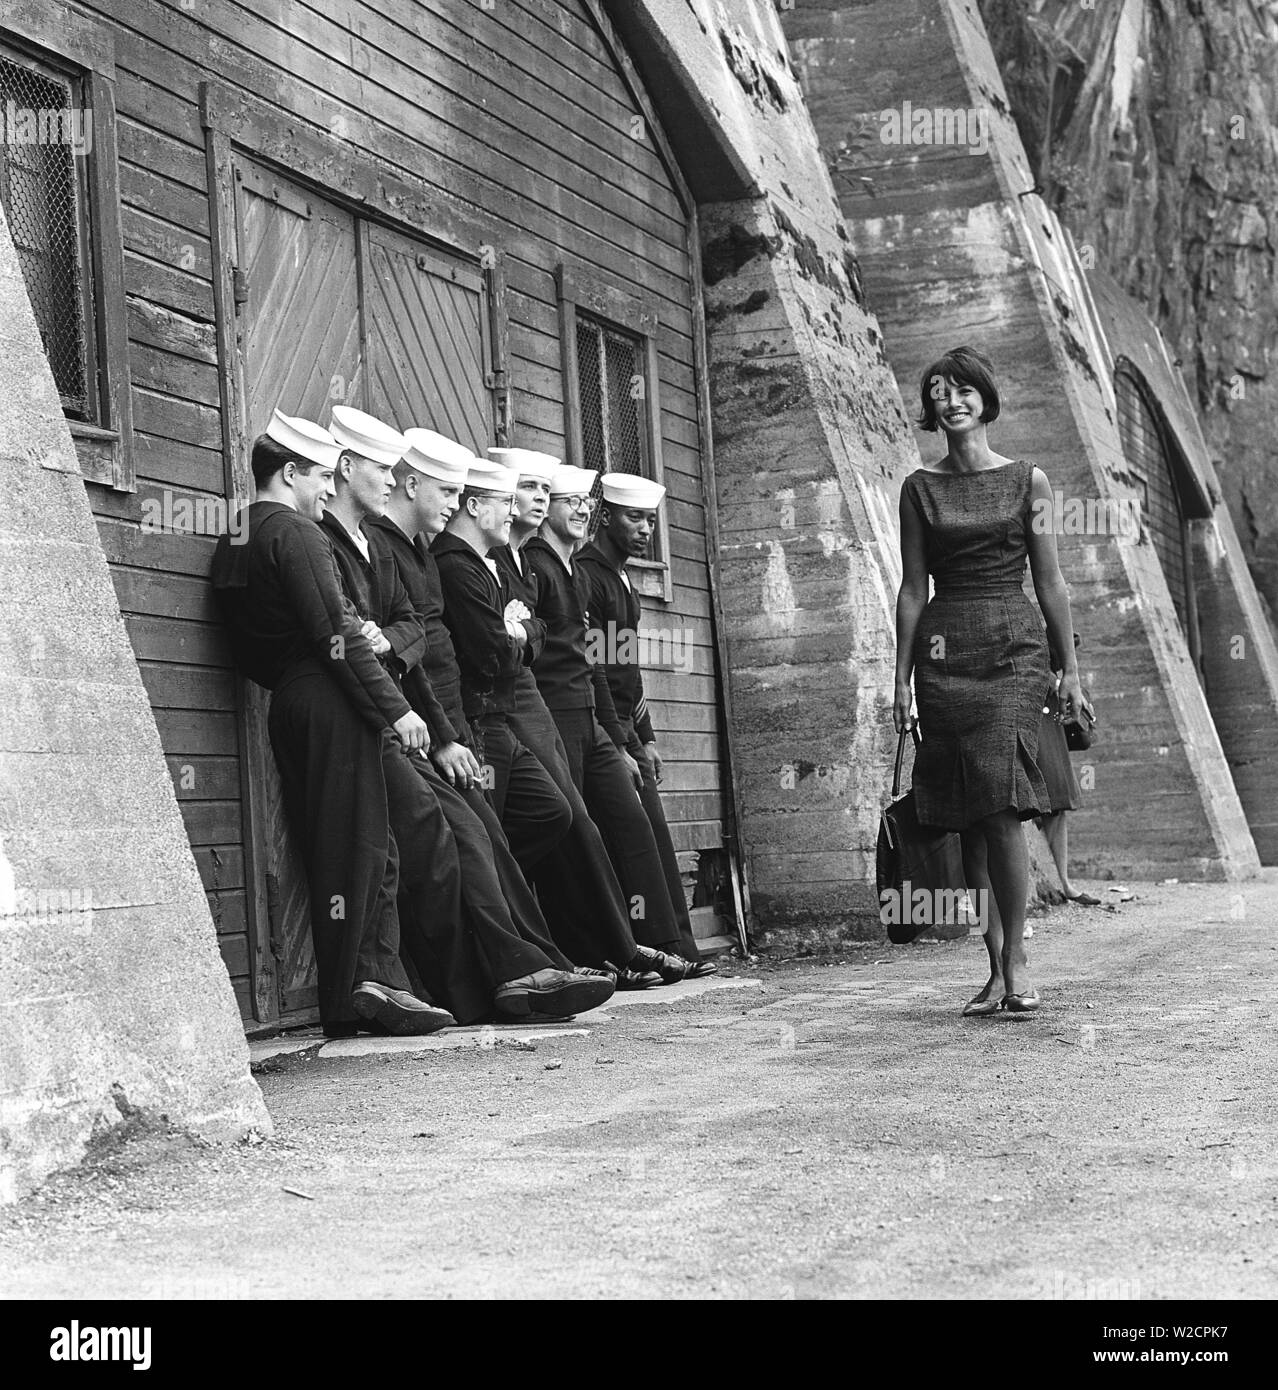 La mode dans les années 60. Un groupe de marins américains sont debout sur le quai en permission et fait un bel ajout à l'analyse de la mode. Une jeune modèle passe entre eux portant une robe et sac à main et chaussures. La Suède 1964 ref BV59-6 Banque D'Images